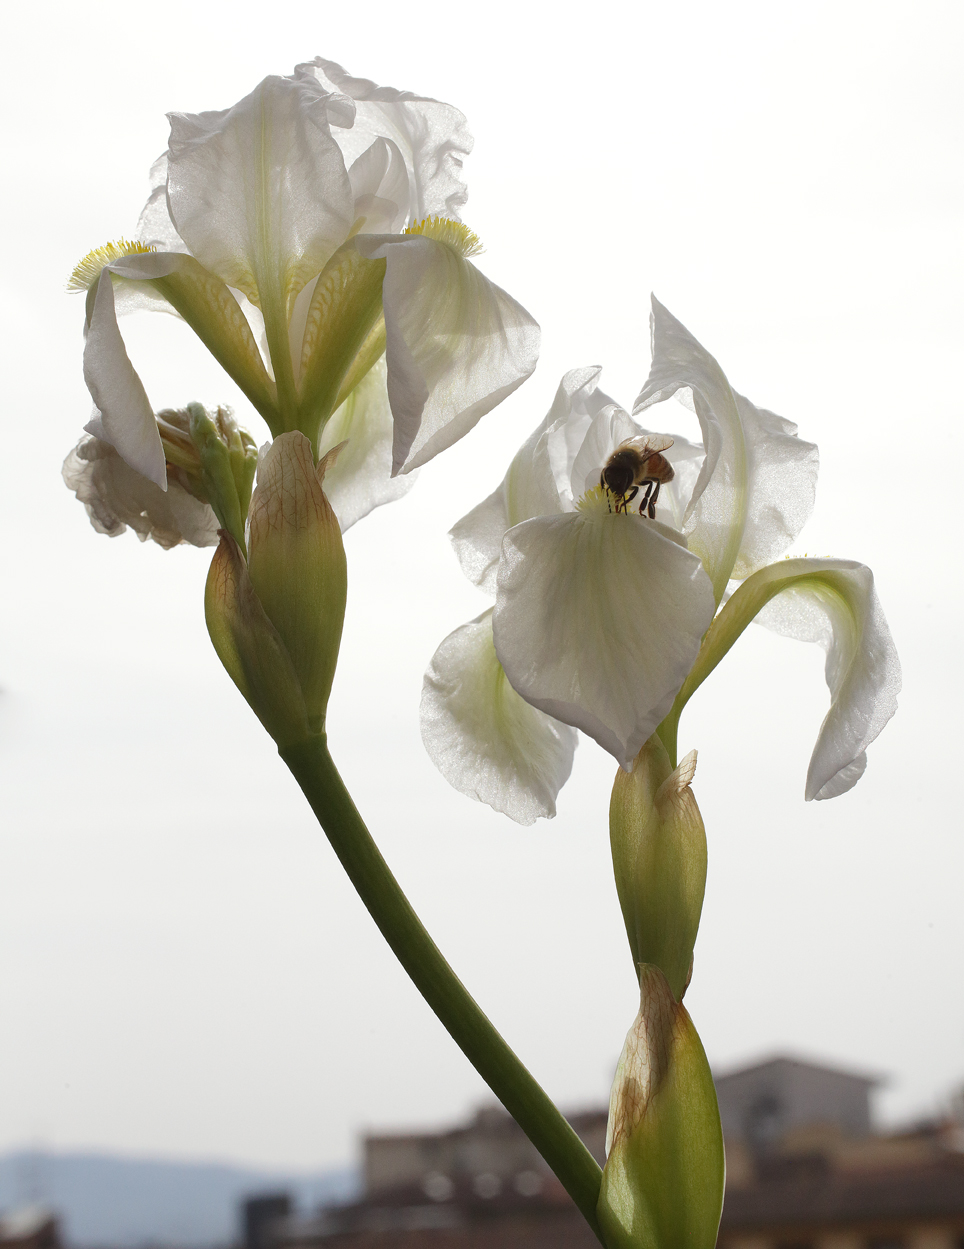 2 fiori Iris florentina L.: in uno dei due si nota un'ape sulla barba